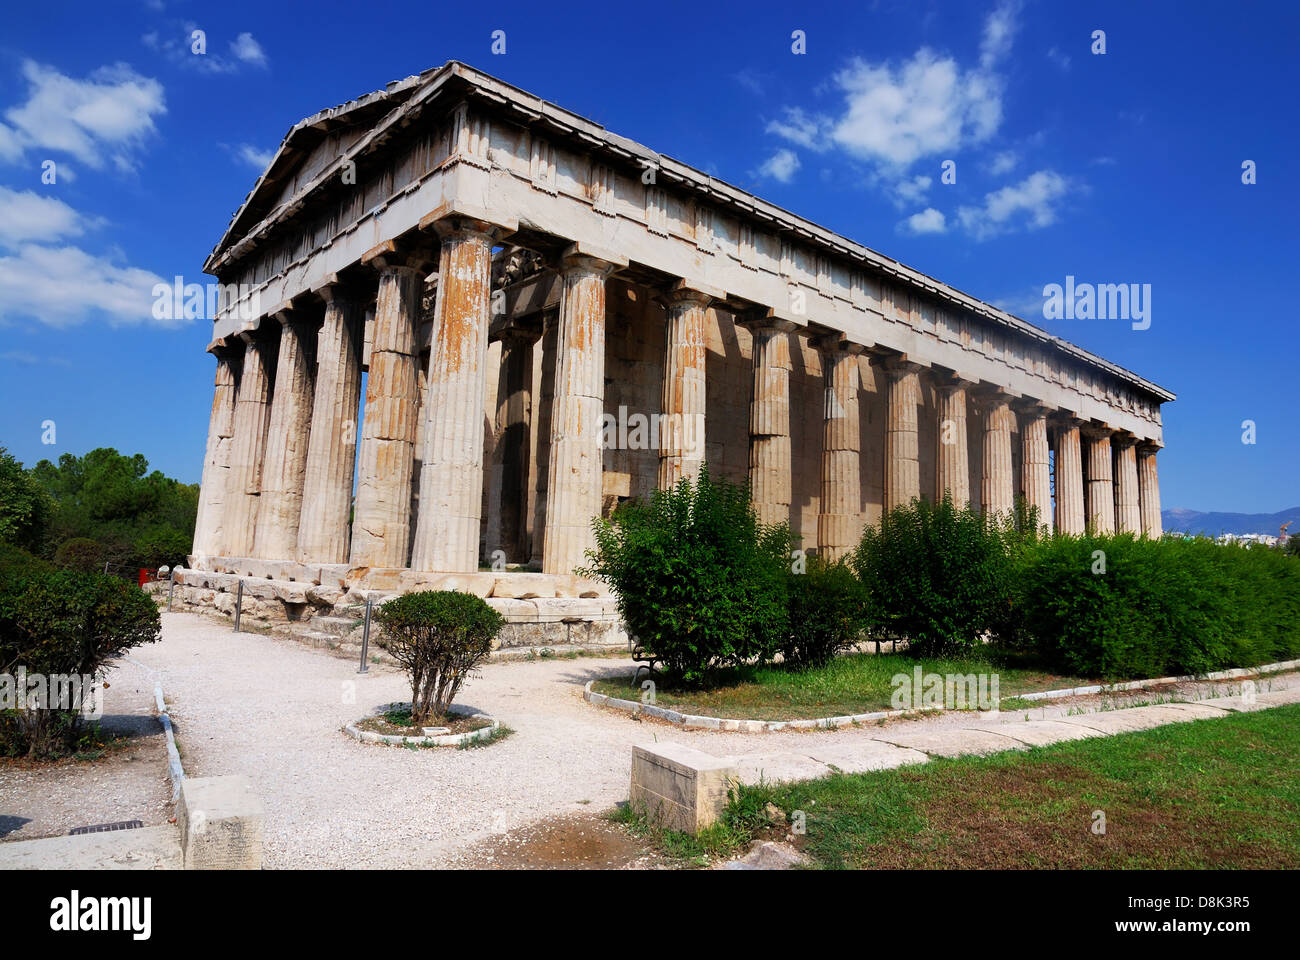 Tempel des Hephaistos, ist der am besten erhaltenen antiken griechischen Tempel, 415 v. Chr. erbaute. Athen, Griechenland. Stockfoto